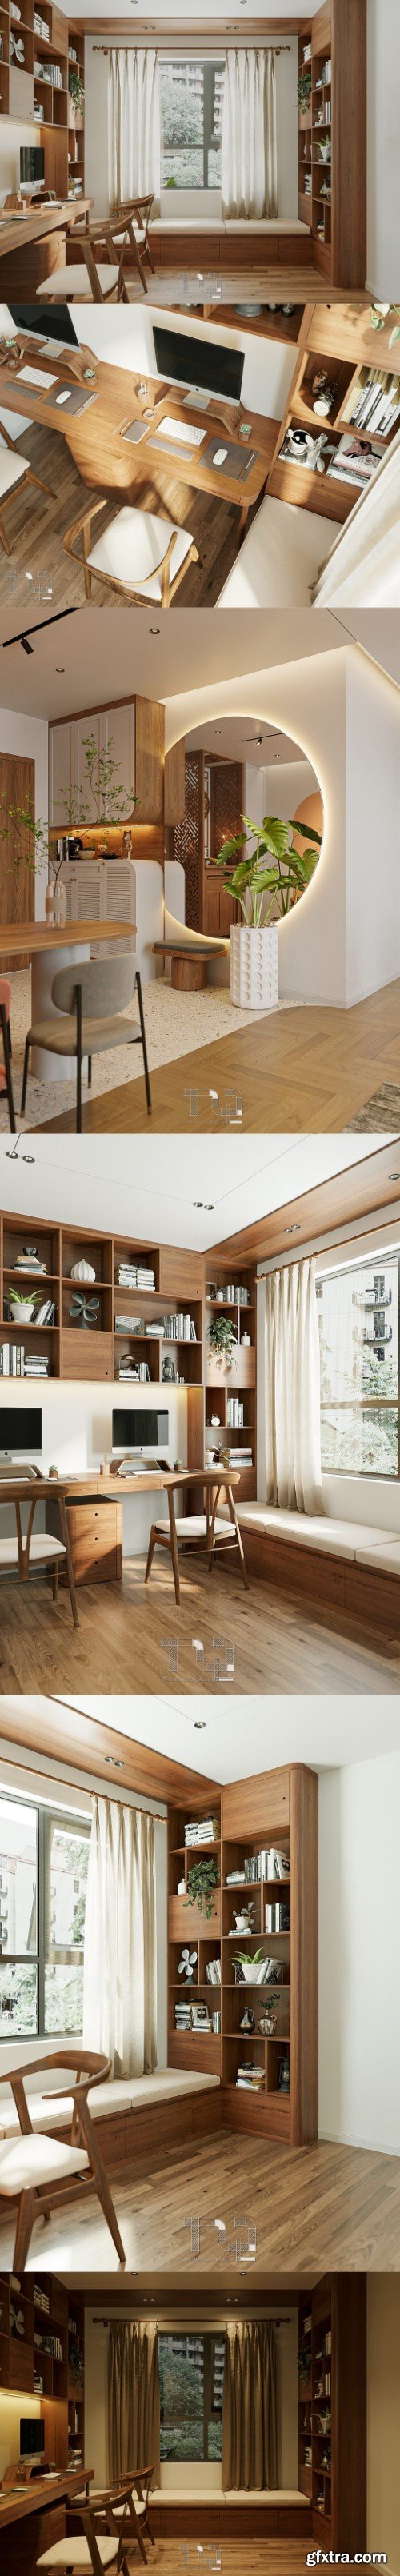 Workroom Interior Model Download By Dang Nam Quang